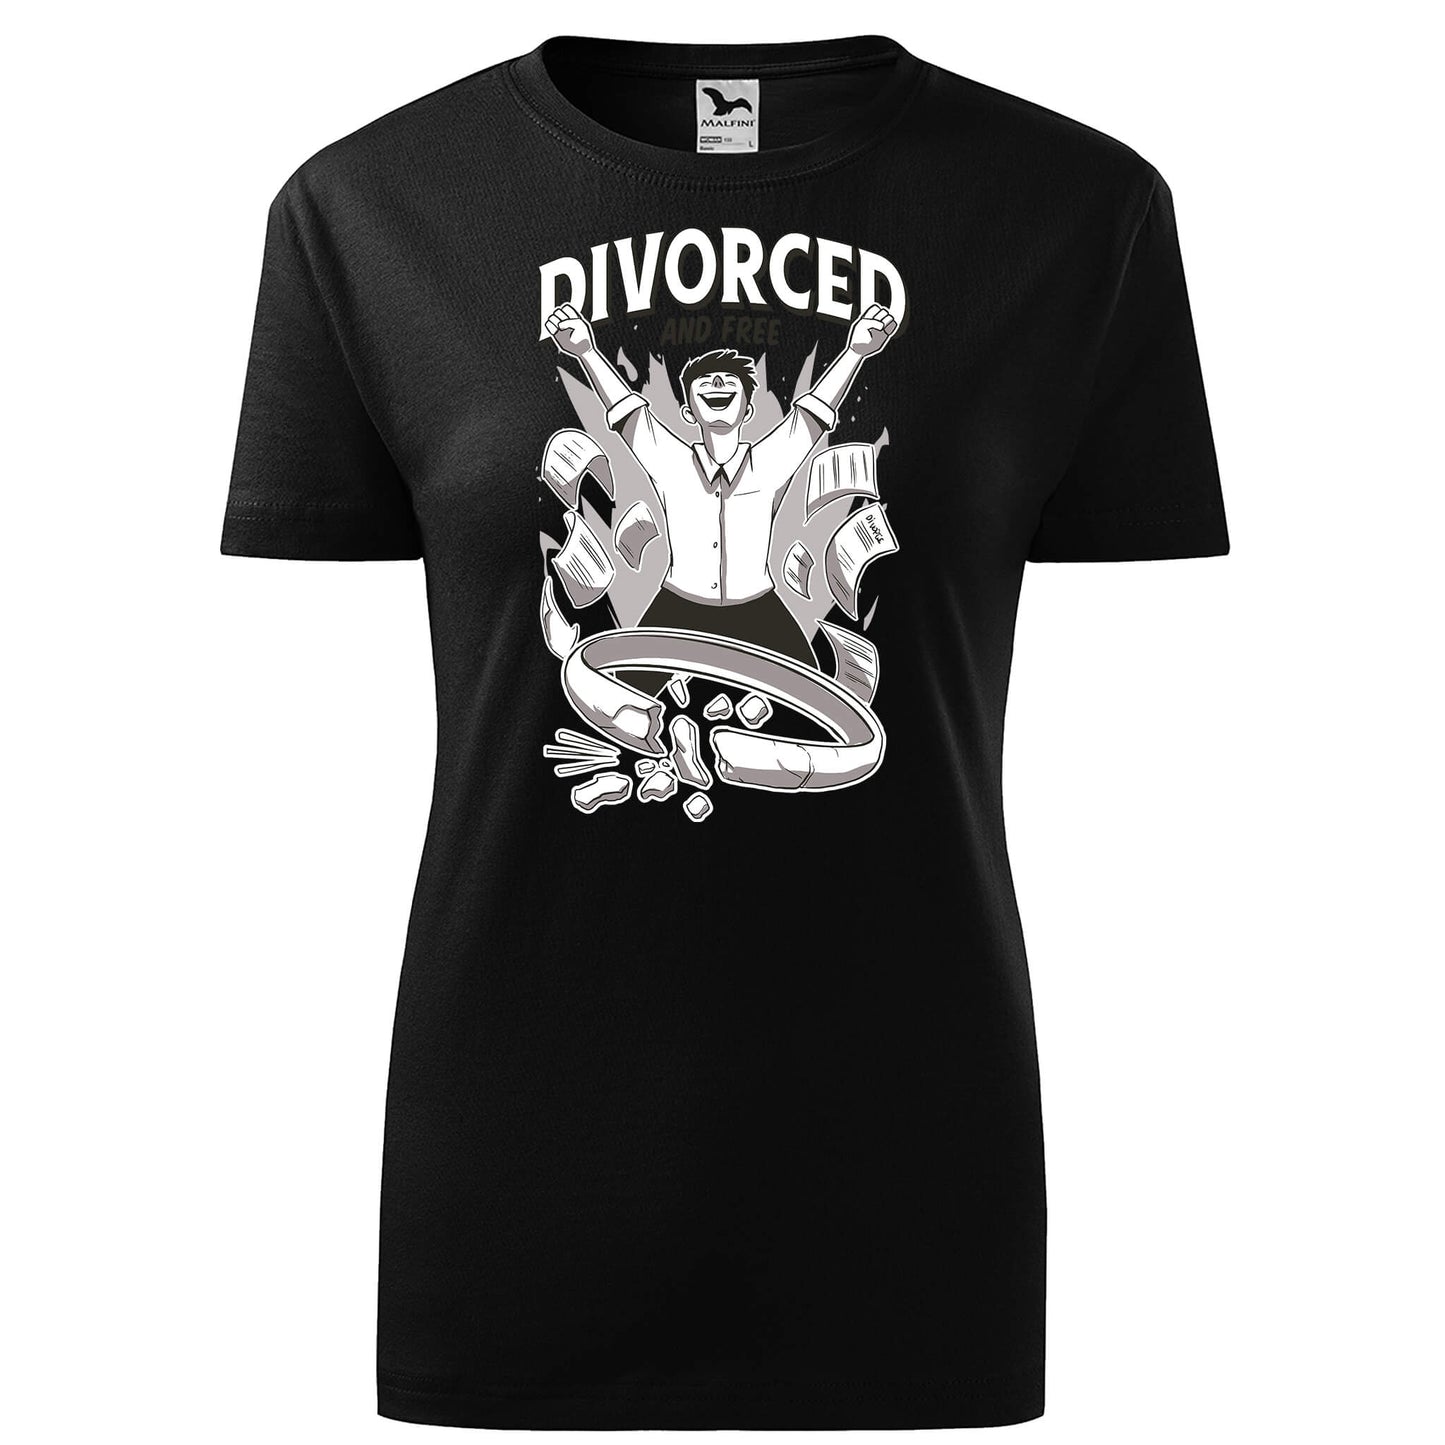 Divorced free t-shirt - rvdesignprint